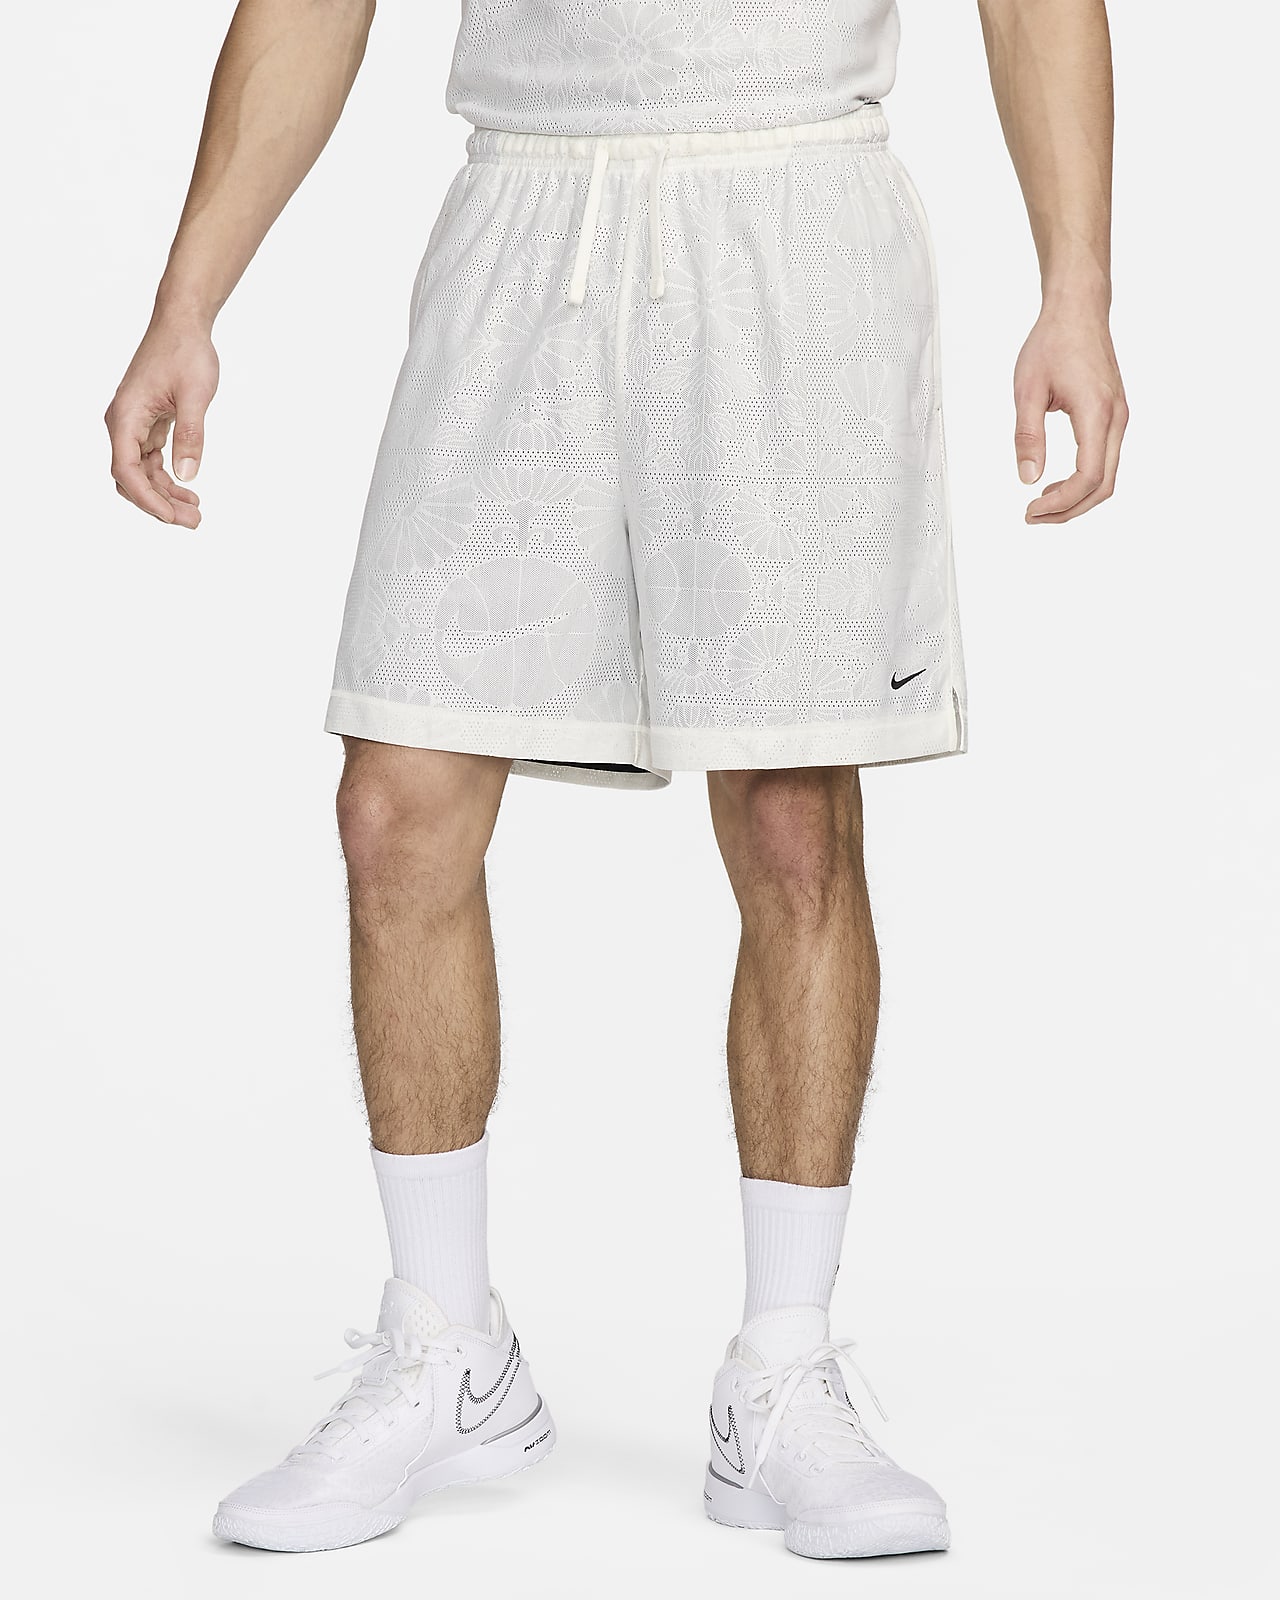 Męskie dwustronne spodenki do koszykówki Dri-FIT Nike Standard Issue 15 cm